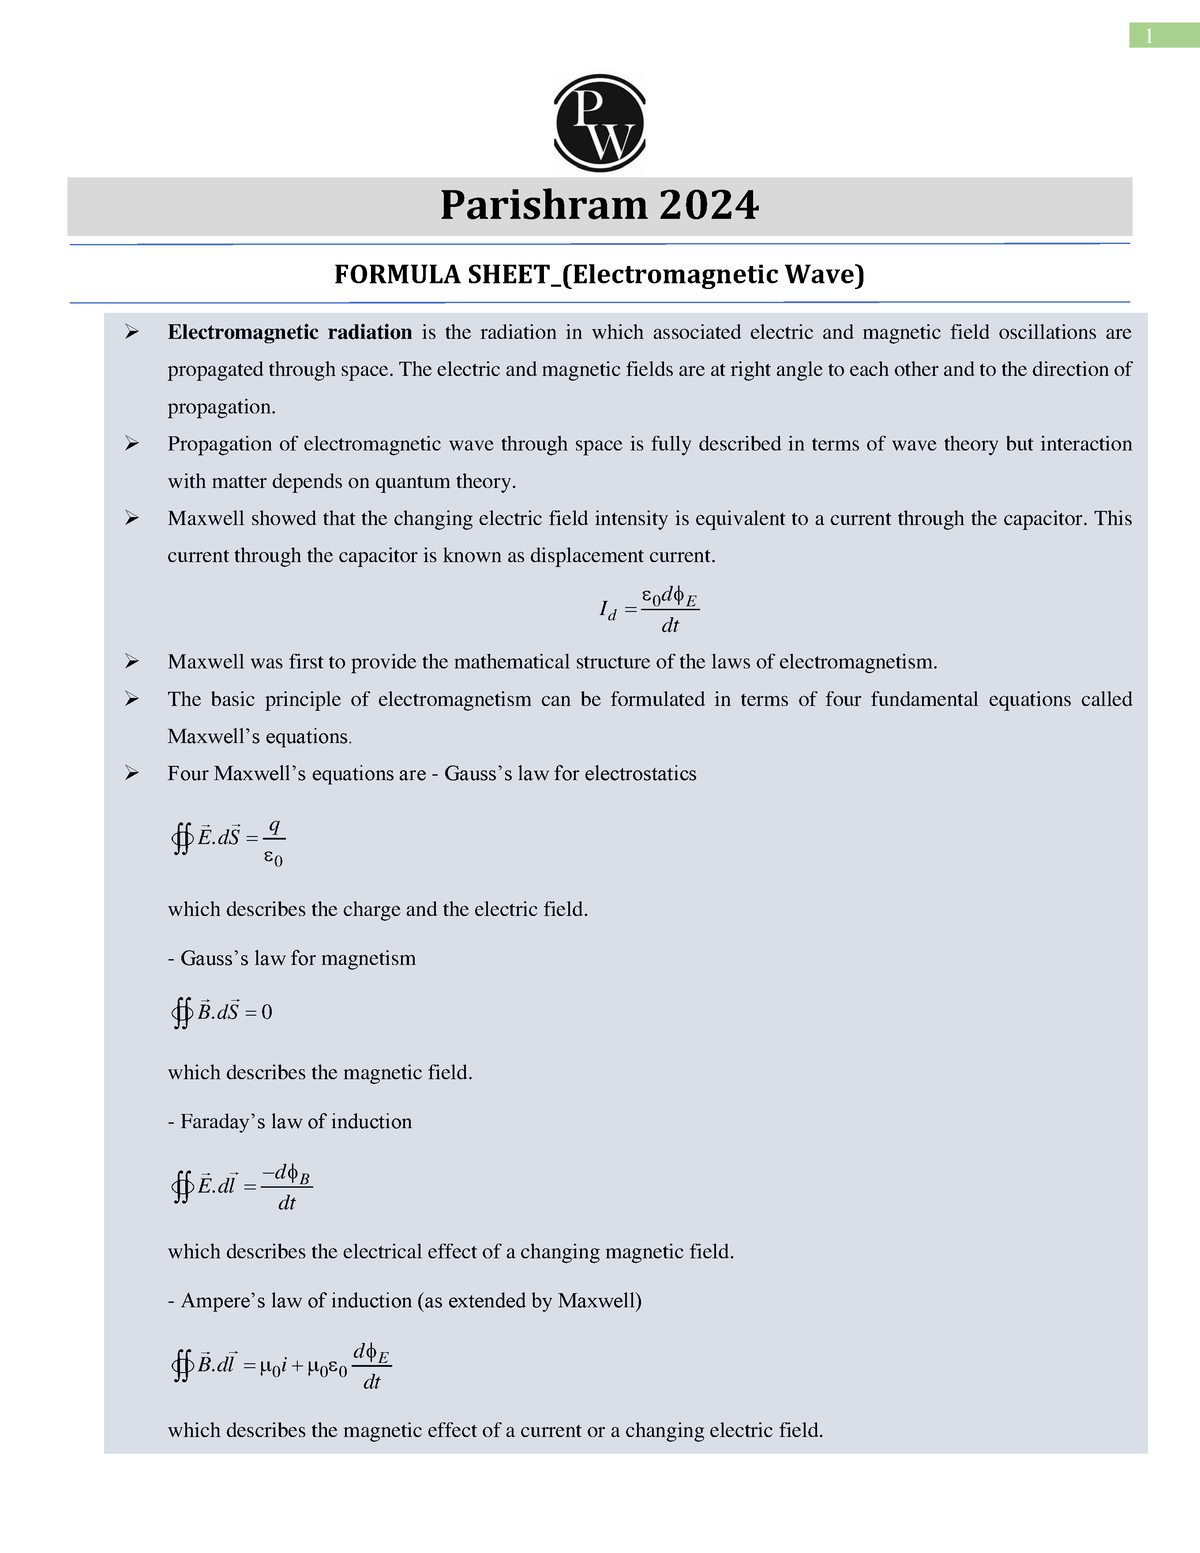 Waves Formula Sheet Parishram 2024 Parishram 2024